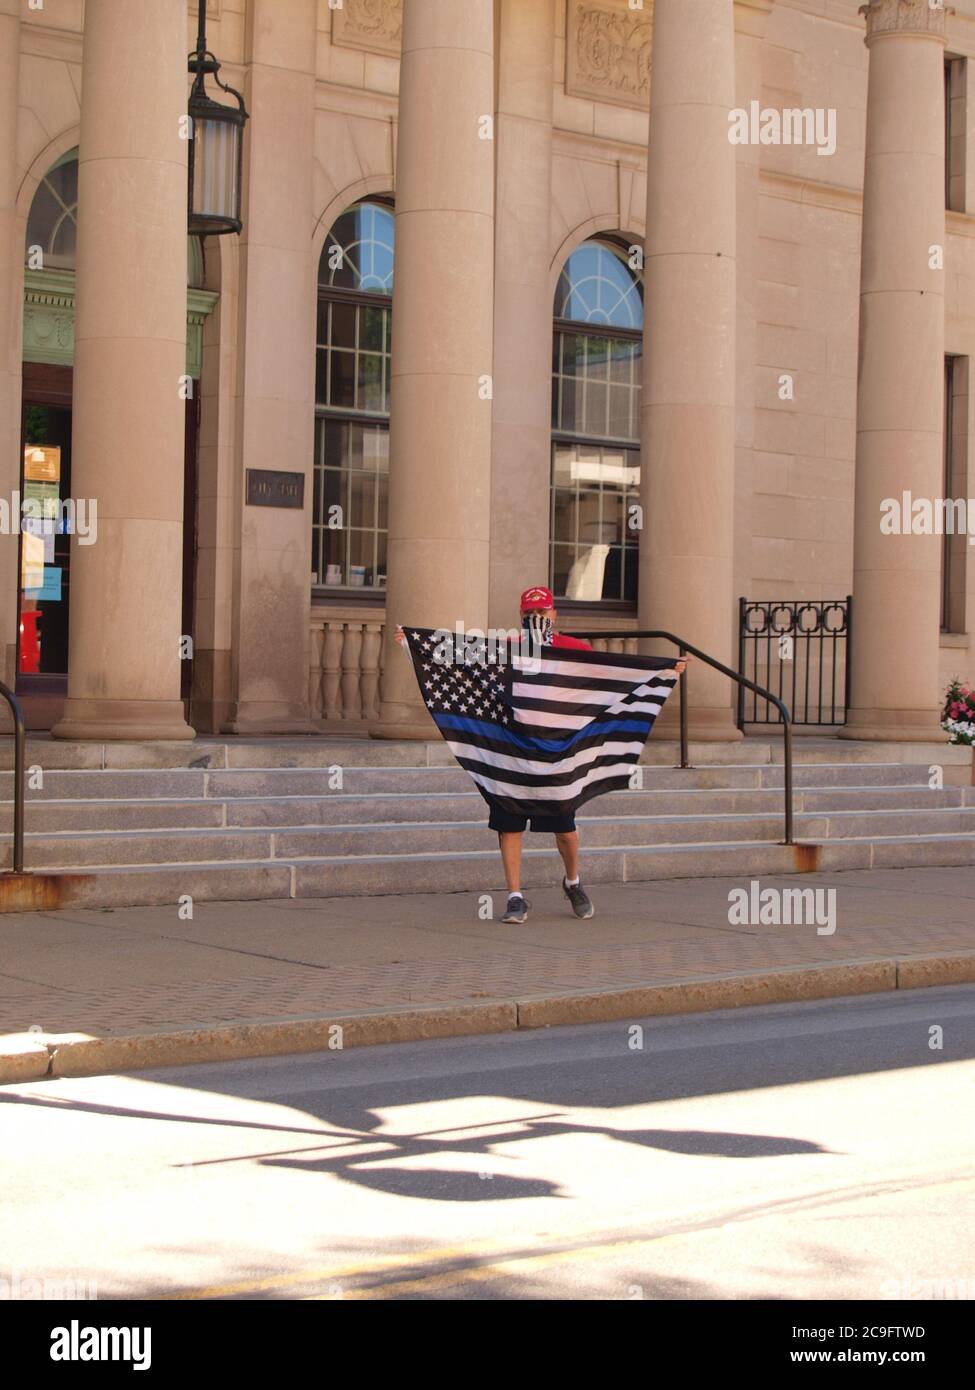 Oneonta, NY / USA - 31 juillet 2020 : un manifestant à l'hôtel de ville fait défiler un drapeau de ligne bleue en opposition à un monument commémoratif BLM approuvé par la ville Banque D'Images